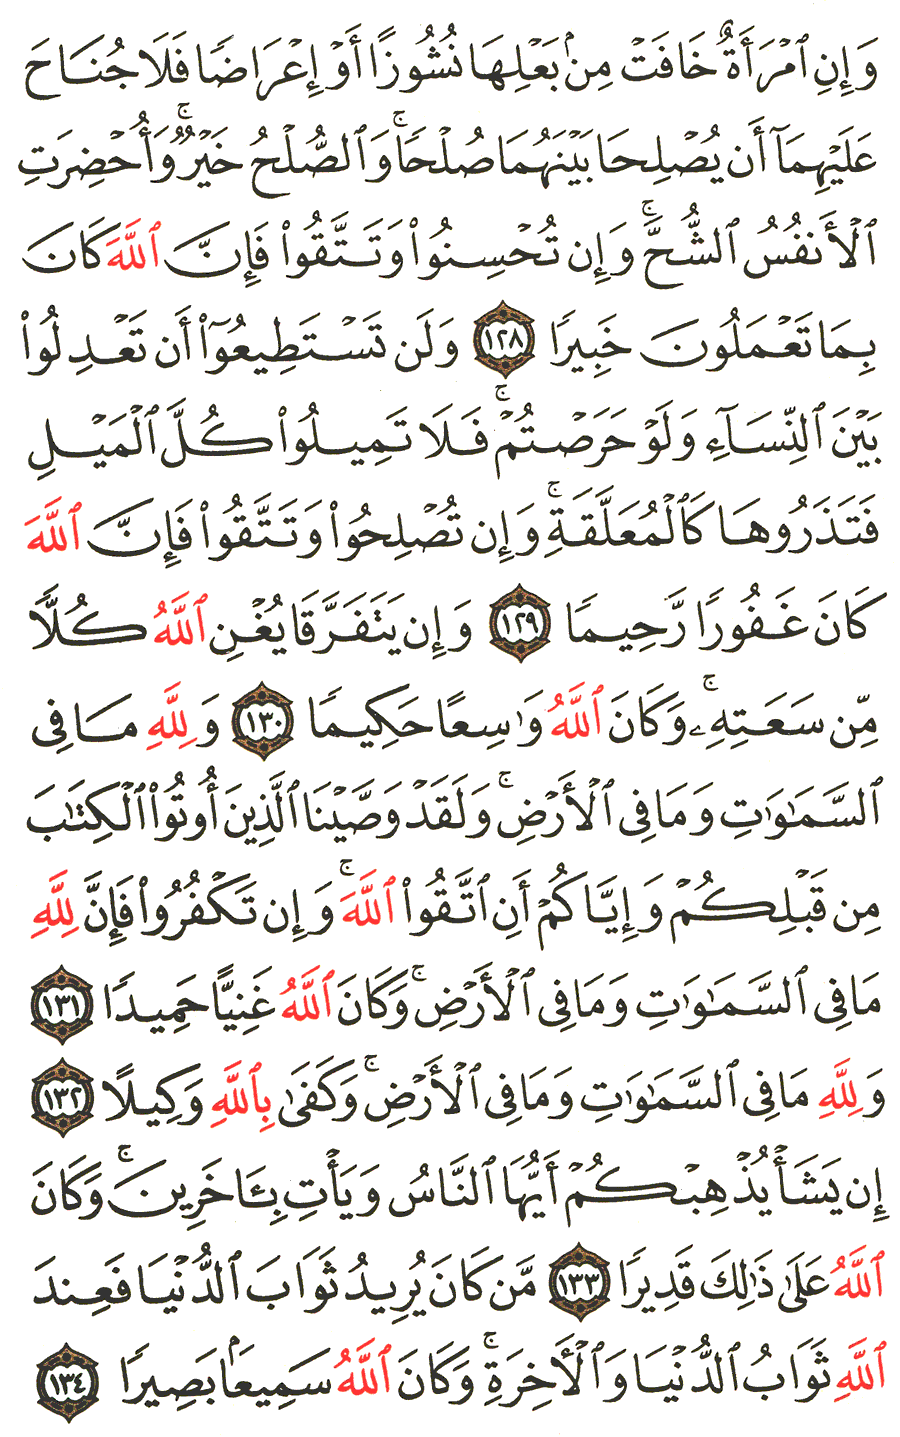 الصفحة رقم 99 من القرآن الكريم مكتوبة من المصحف